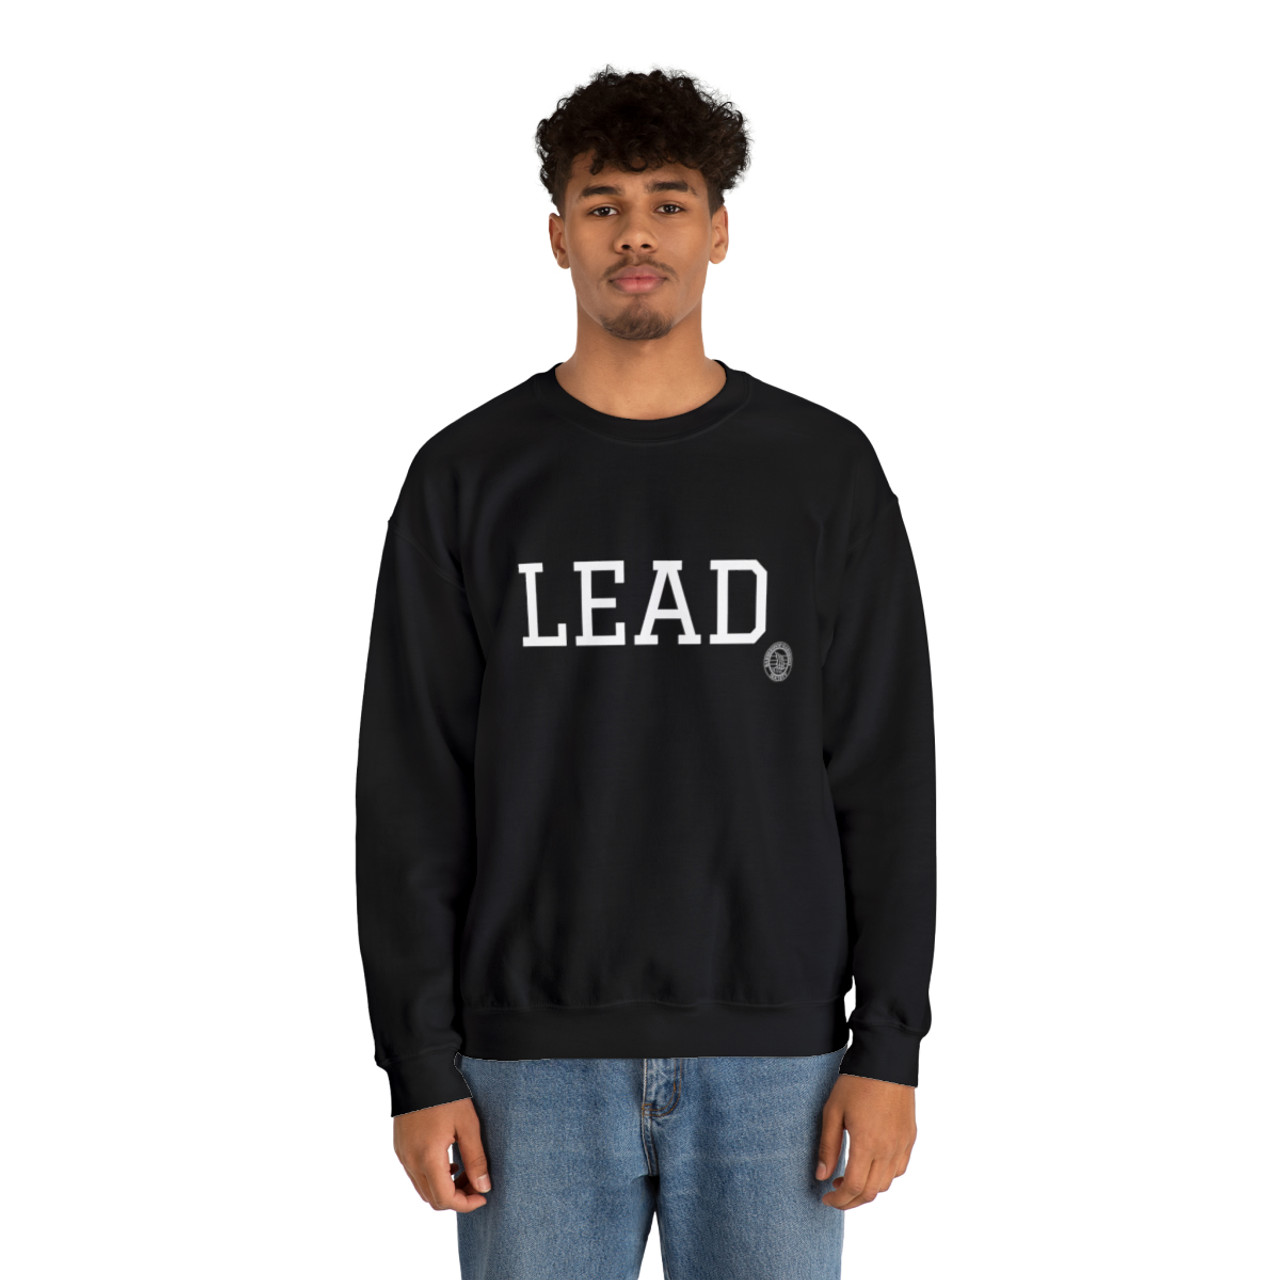 LEAD Crewneck Sweatshirt- Multiple Colors